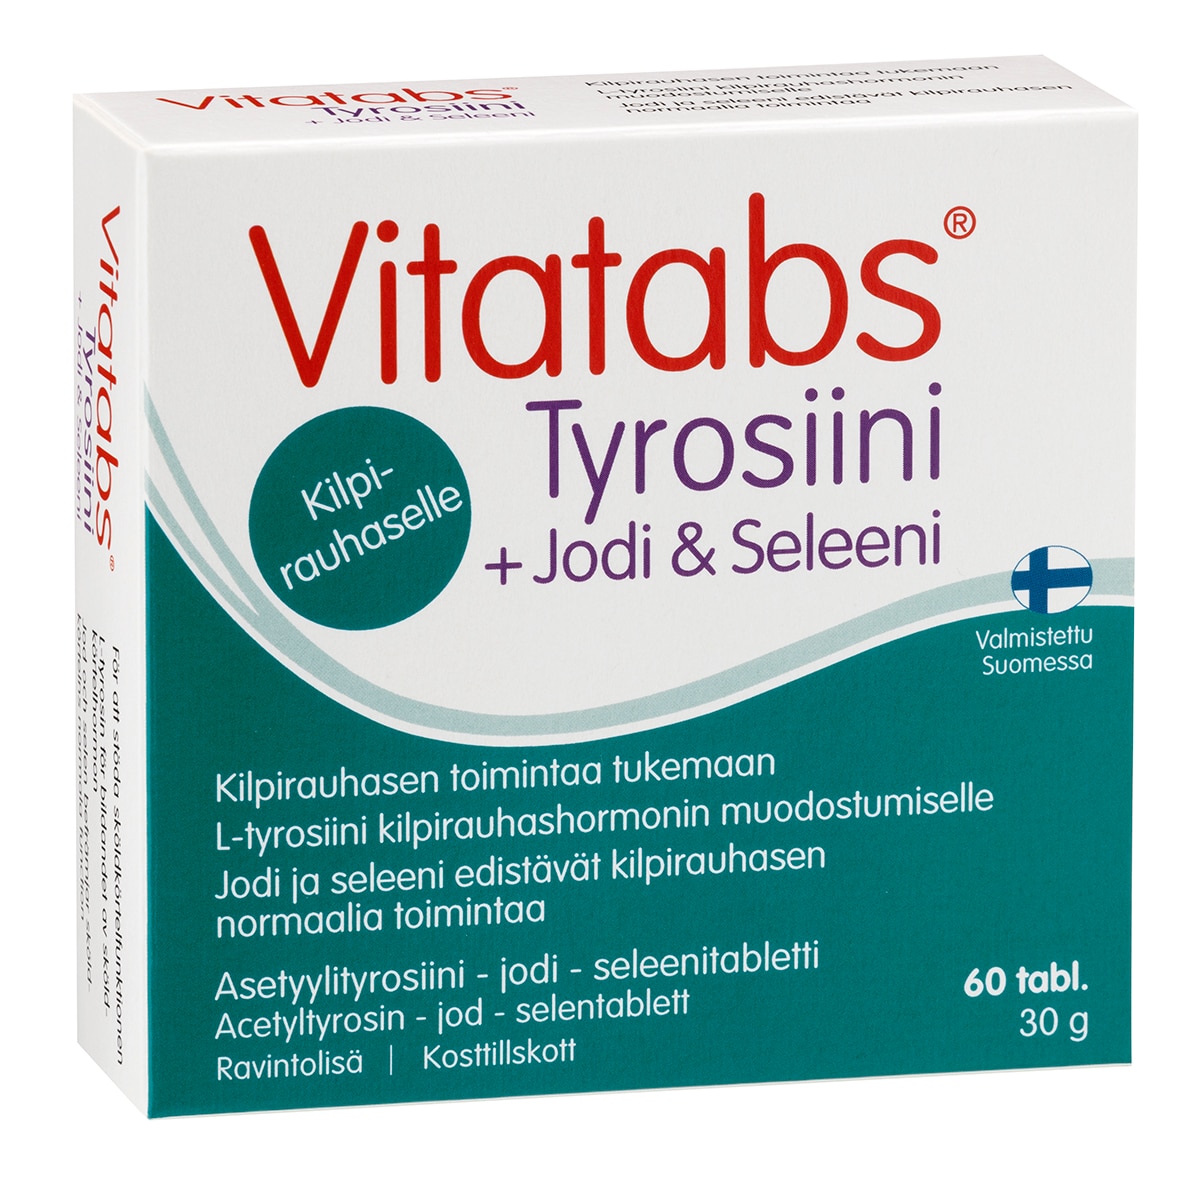 Vitatabs Tyrosiini + Jodi&Seleeni 60 tab